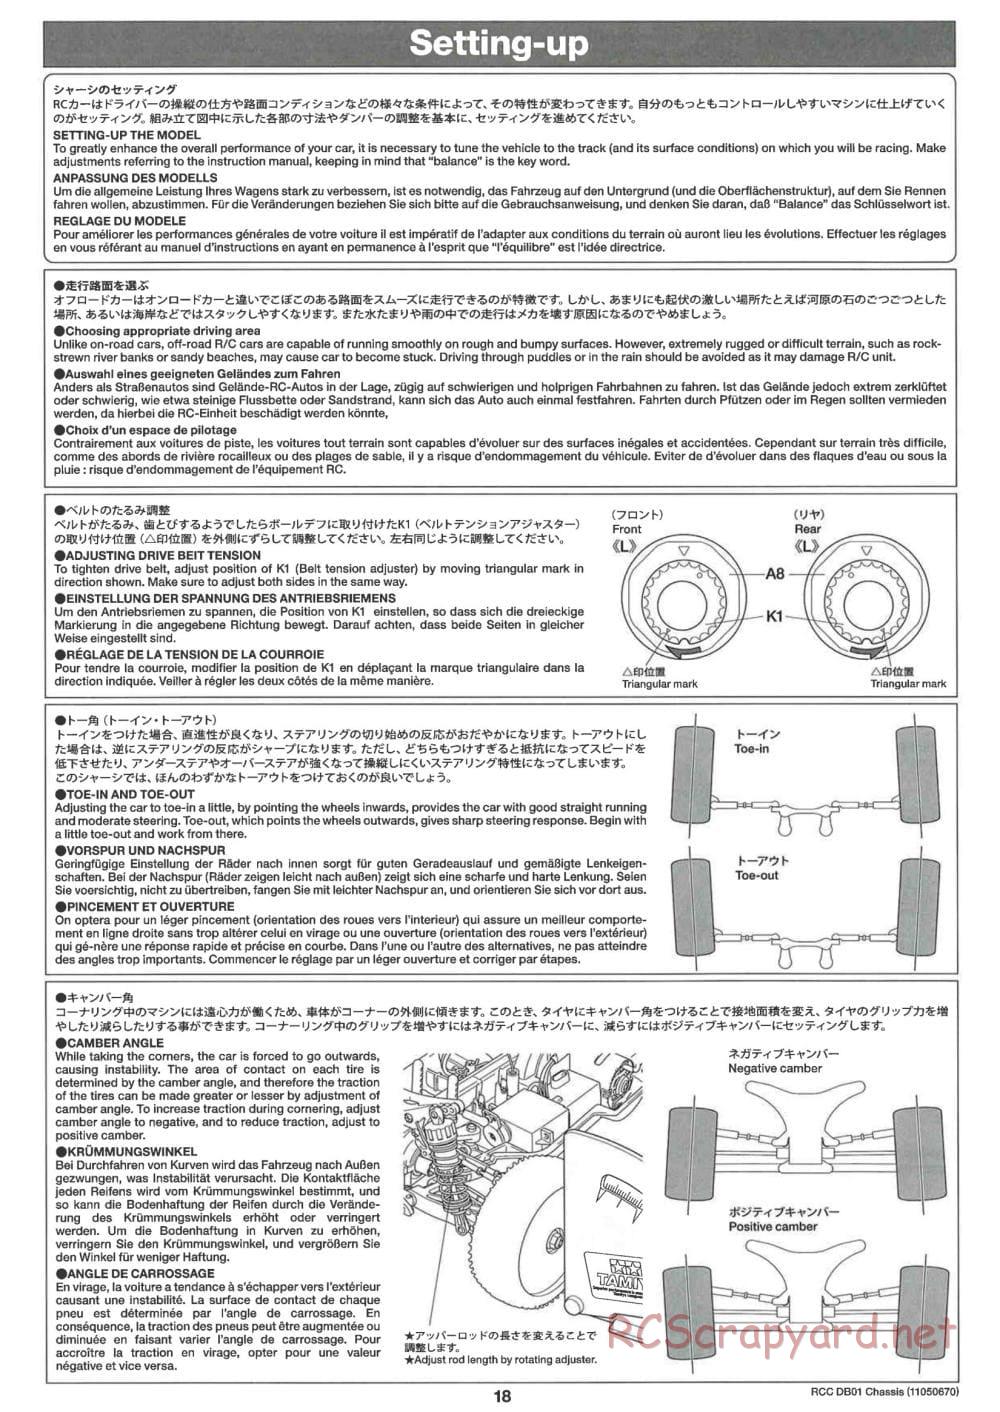 Tamiya - DB-01 Chassis - Manual - Page 18